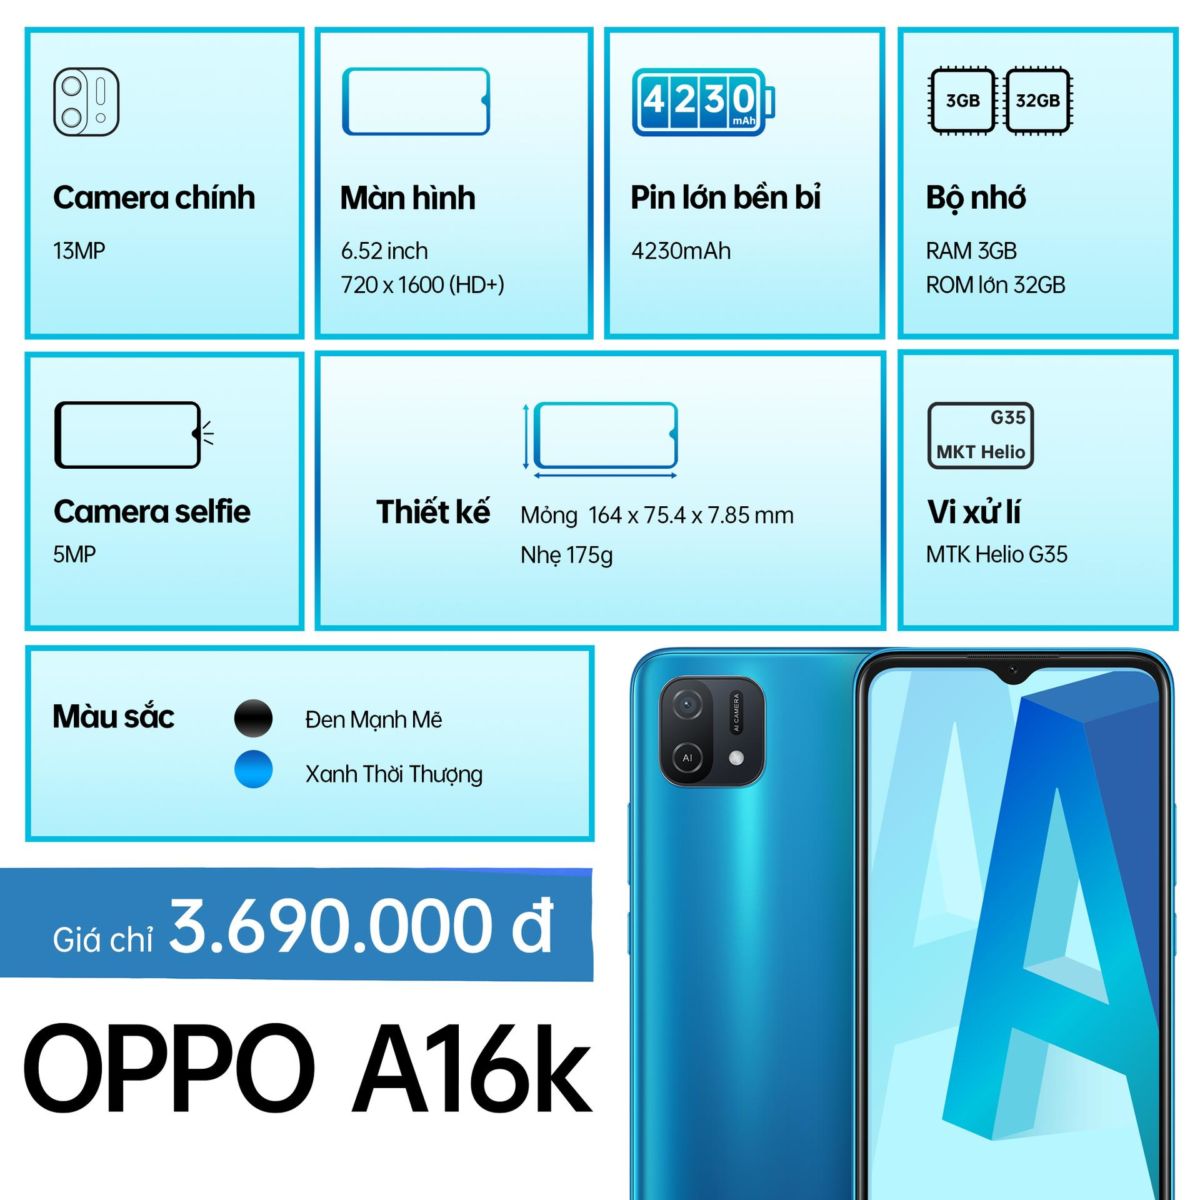 OPPO A16k lên kệ: hai màu xanh và đen, giá chính thức 3,7 triệu đồng